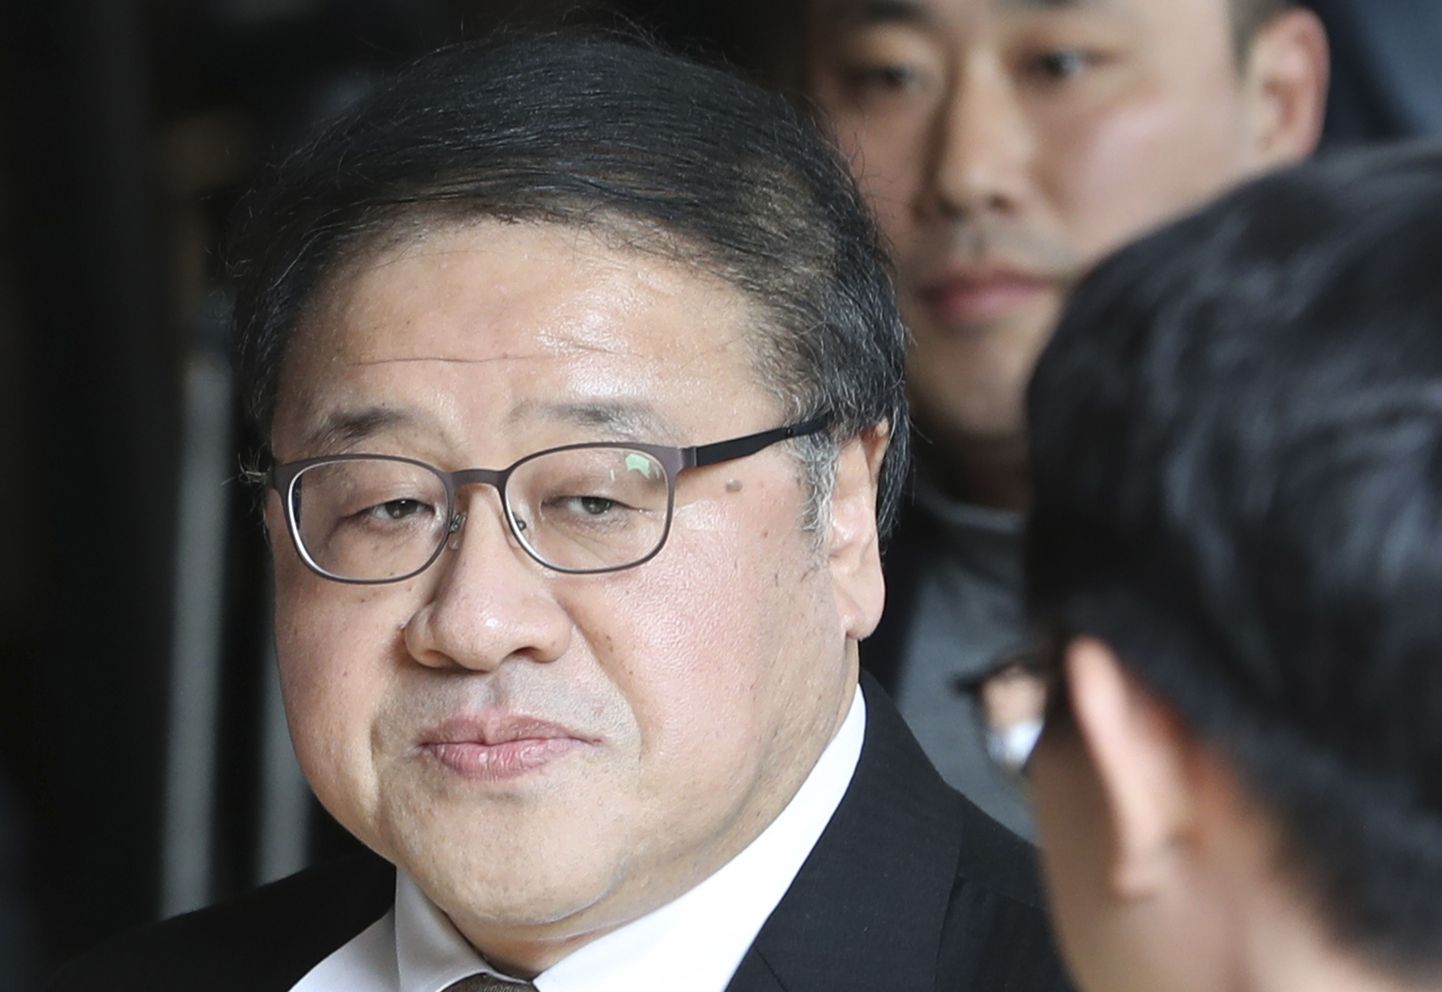 Endine presidendinõunik Ahn Jong-beom käis kolmapäeval prokuratuuris küsitlusel.